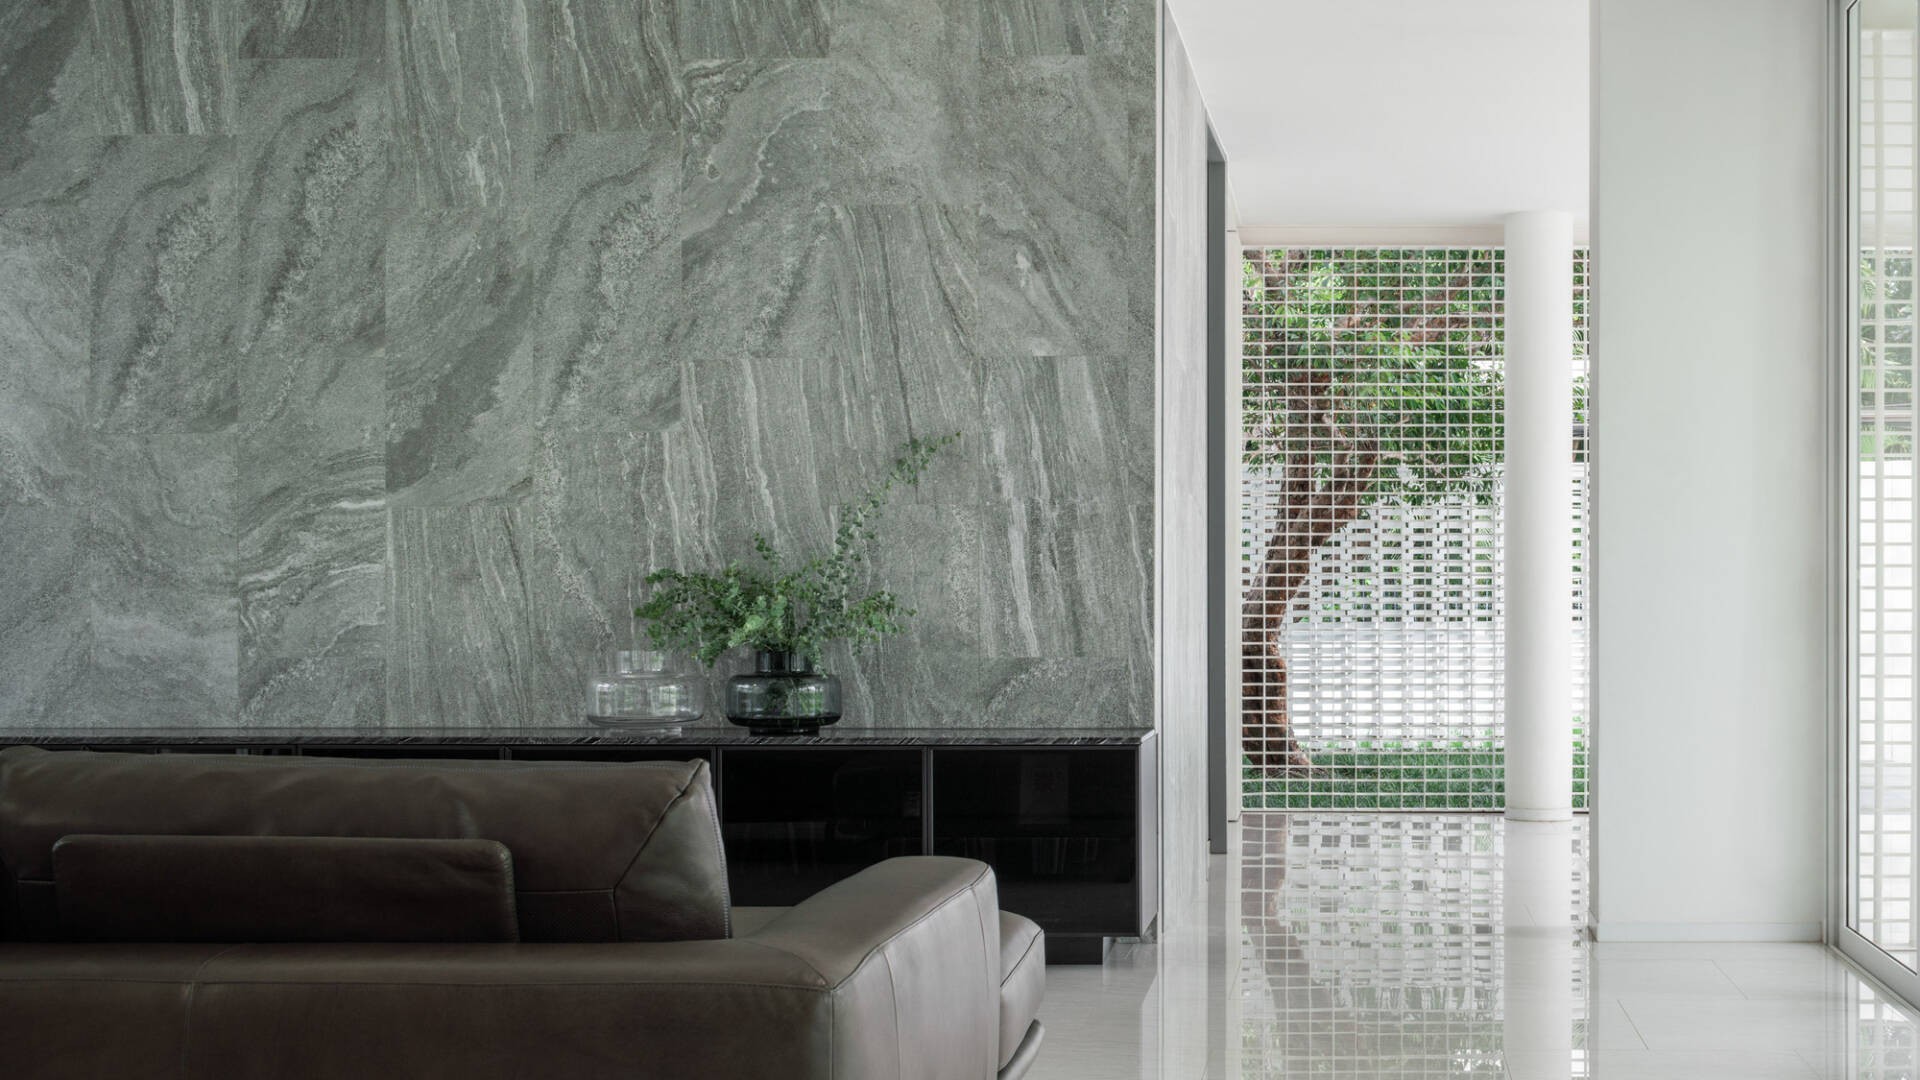 
Không gian phòng khách thoáng sáng tự nhiên nhờ hệ tường đặc biệt và cửa kính trong suốt
